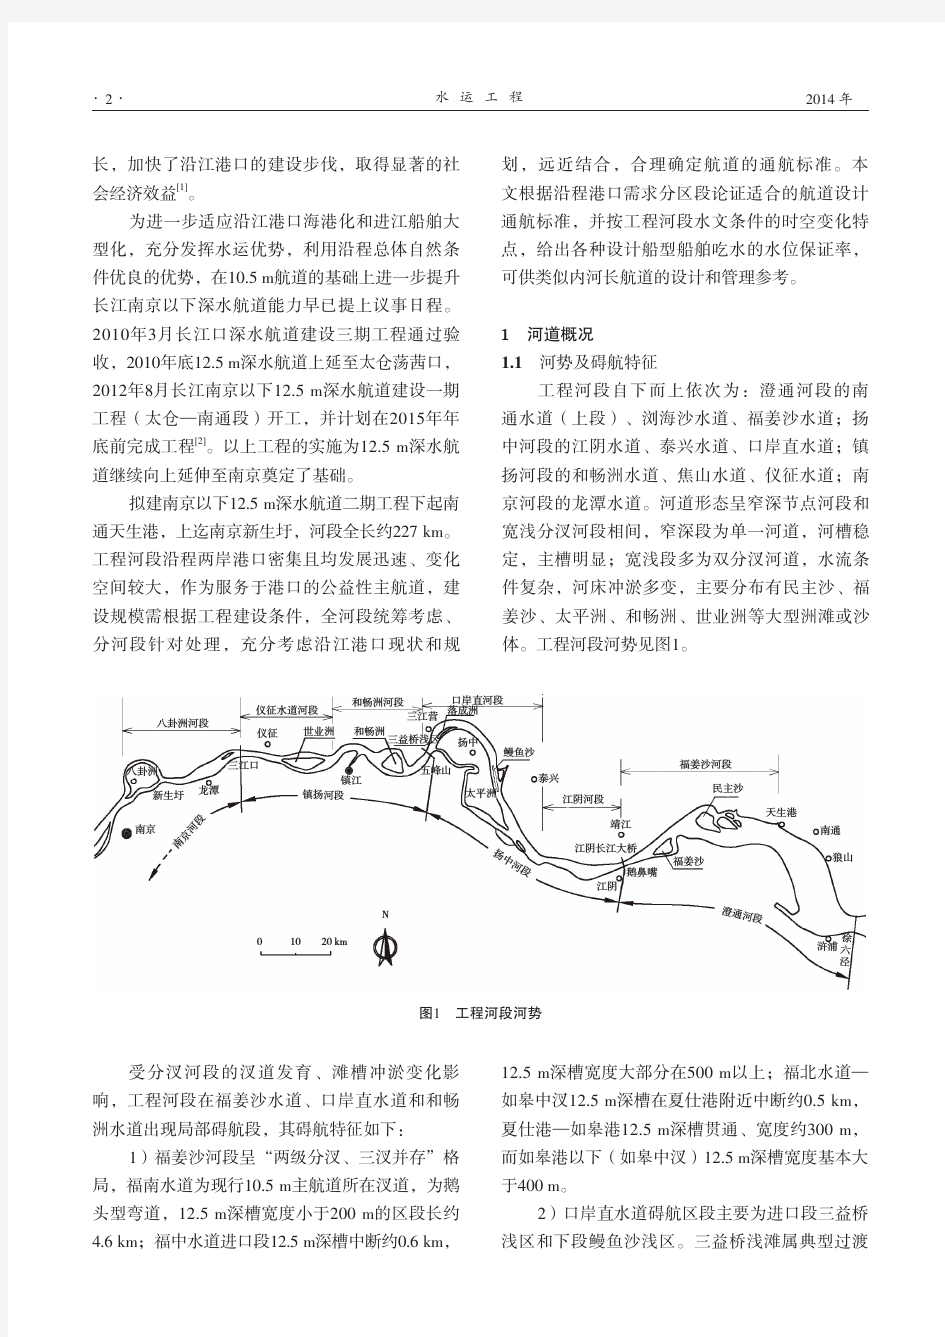 长江下游南通至南京段深水航道设计通航标准研究